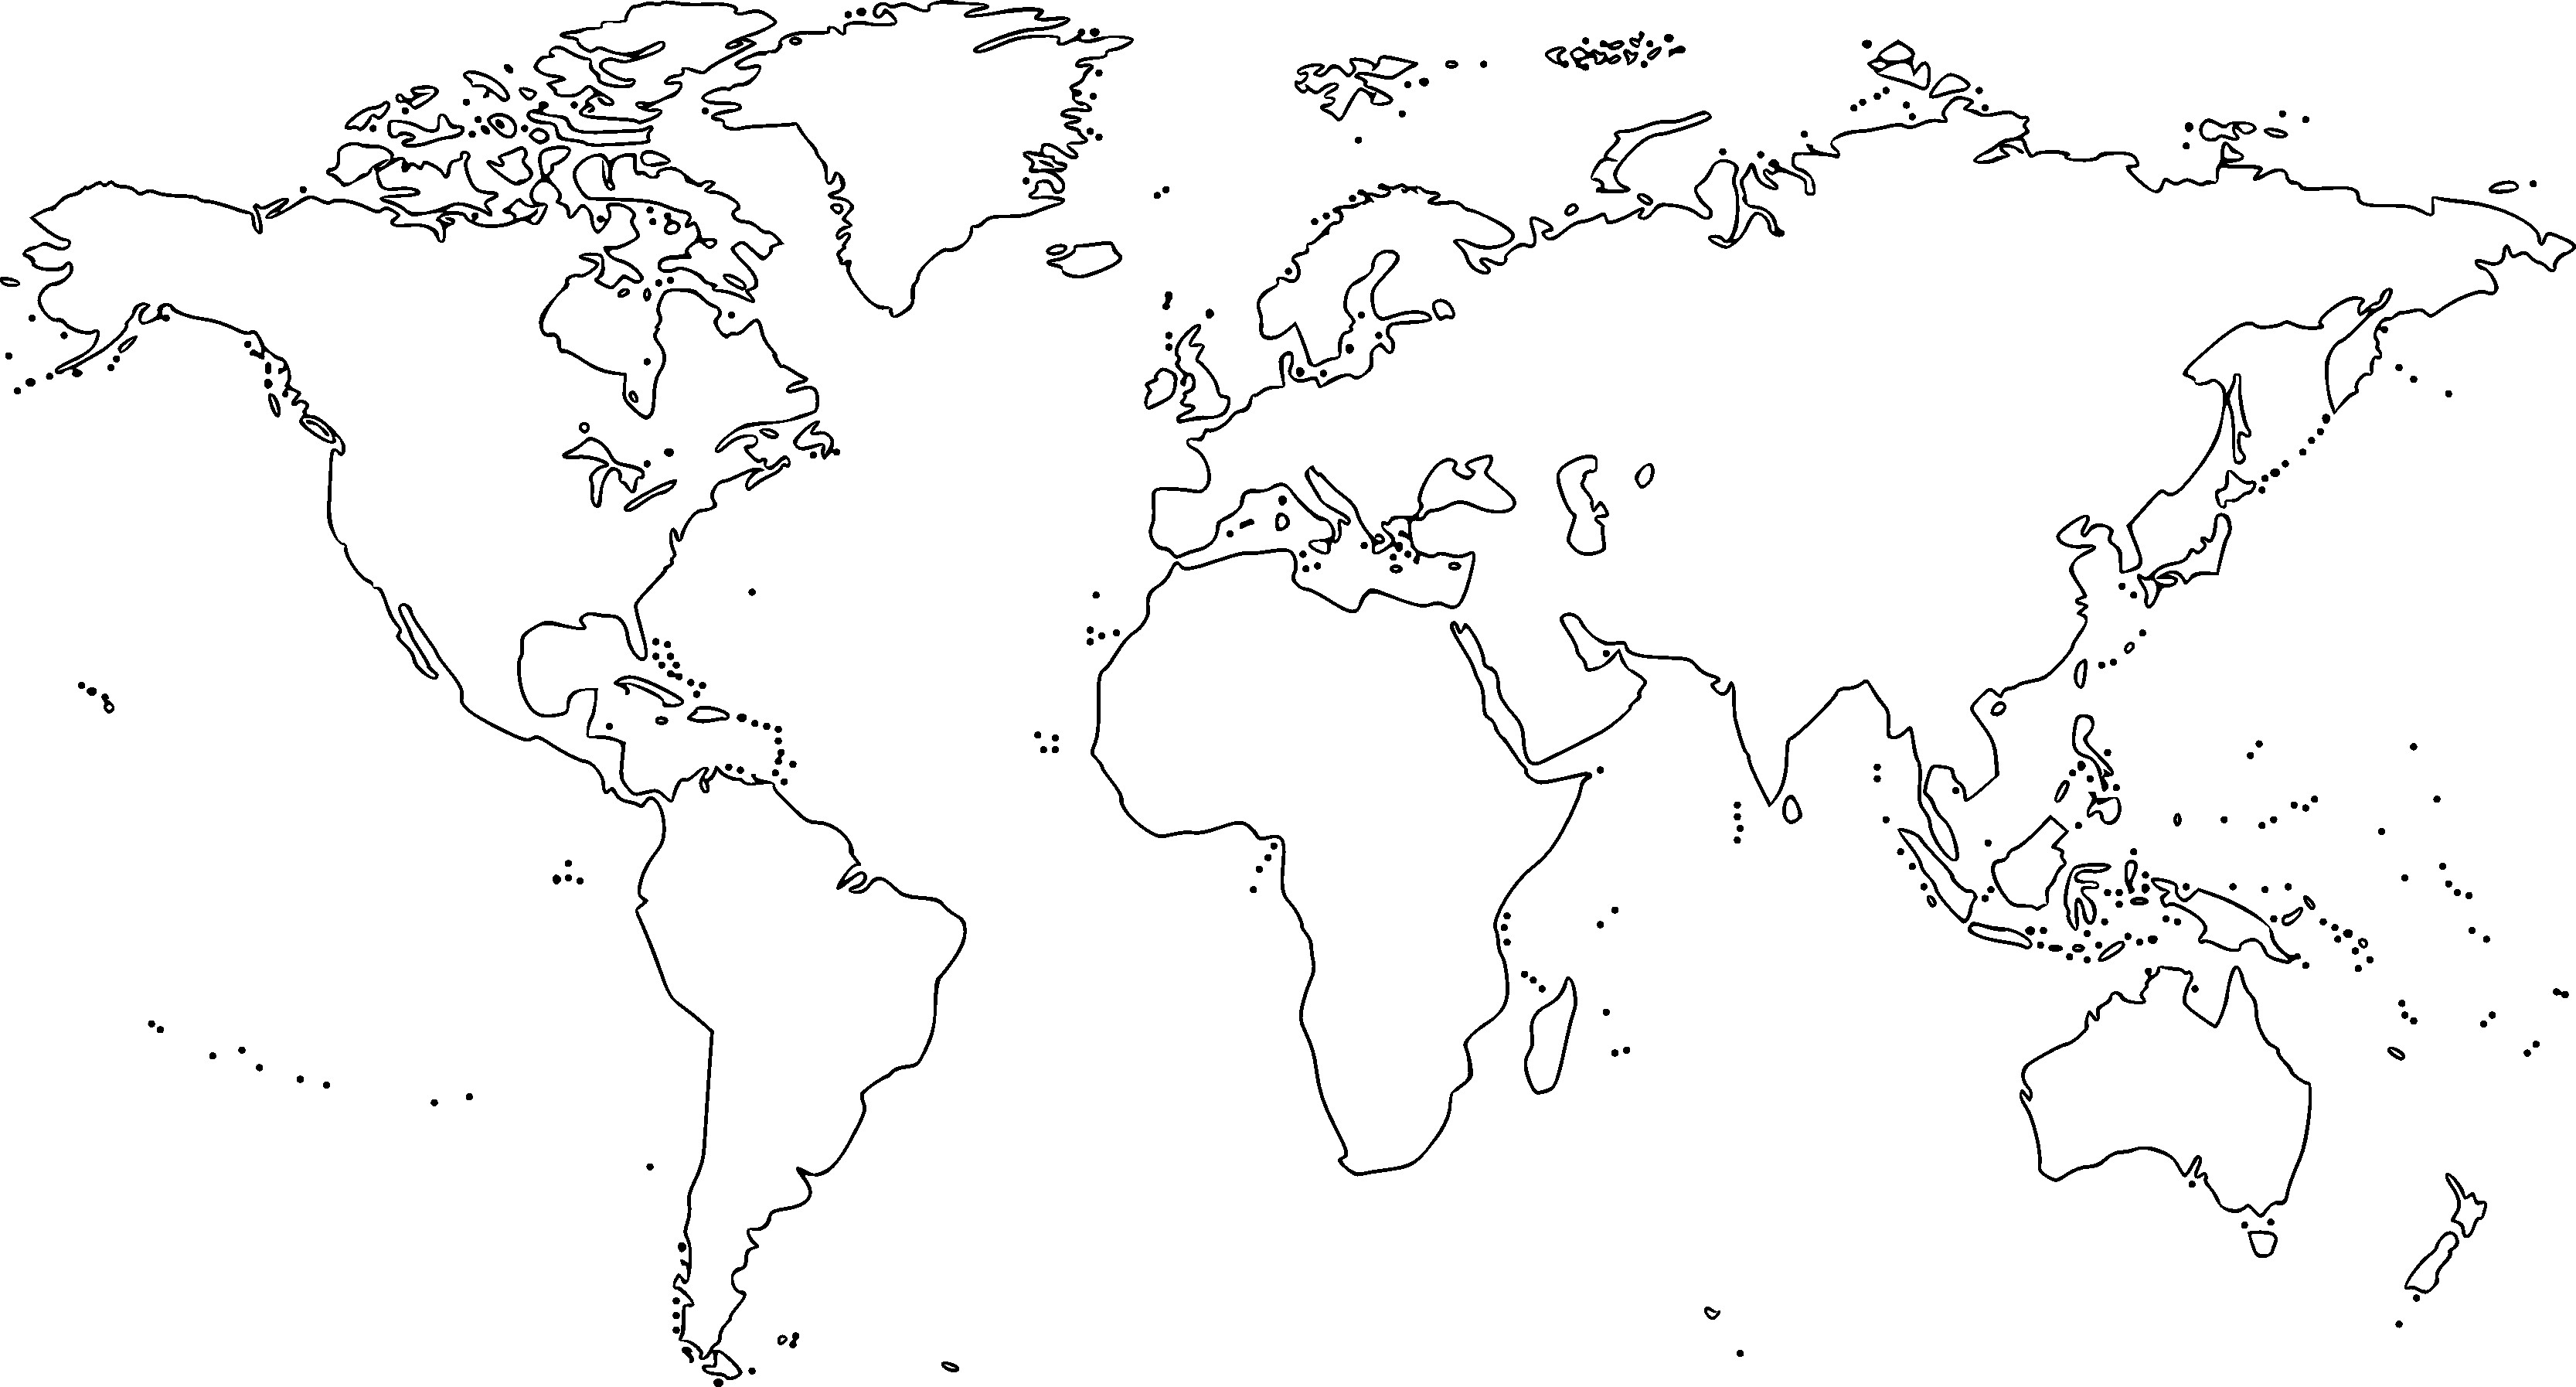 Ð ÐµÐ·ÑÐ ÑÐ°Ñ ÑÐ Ð¸ÐºÐ° Ð·Ð° world map line drawing